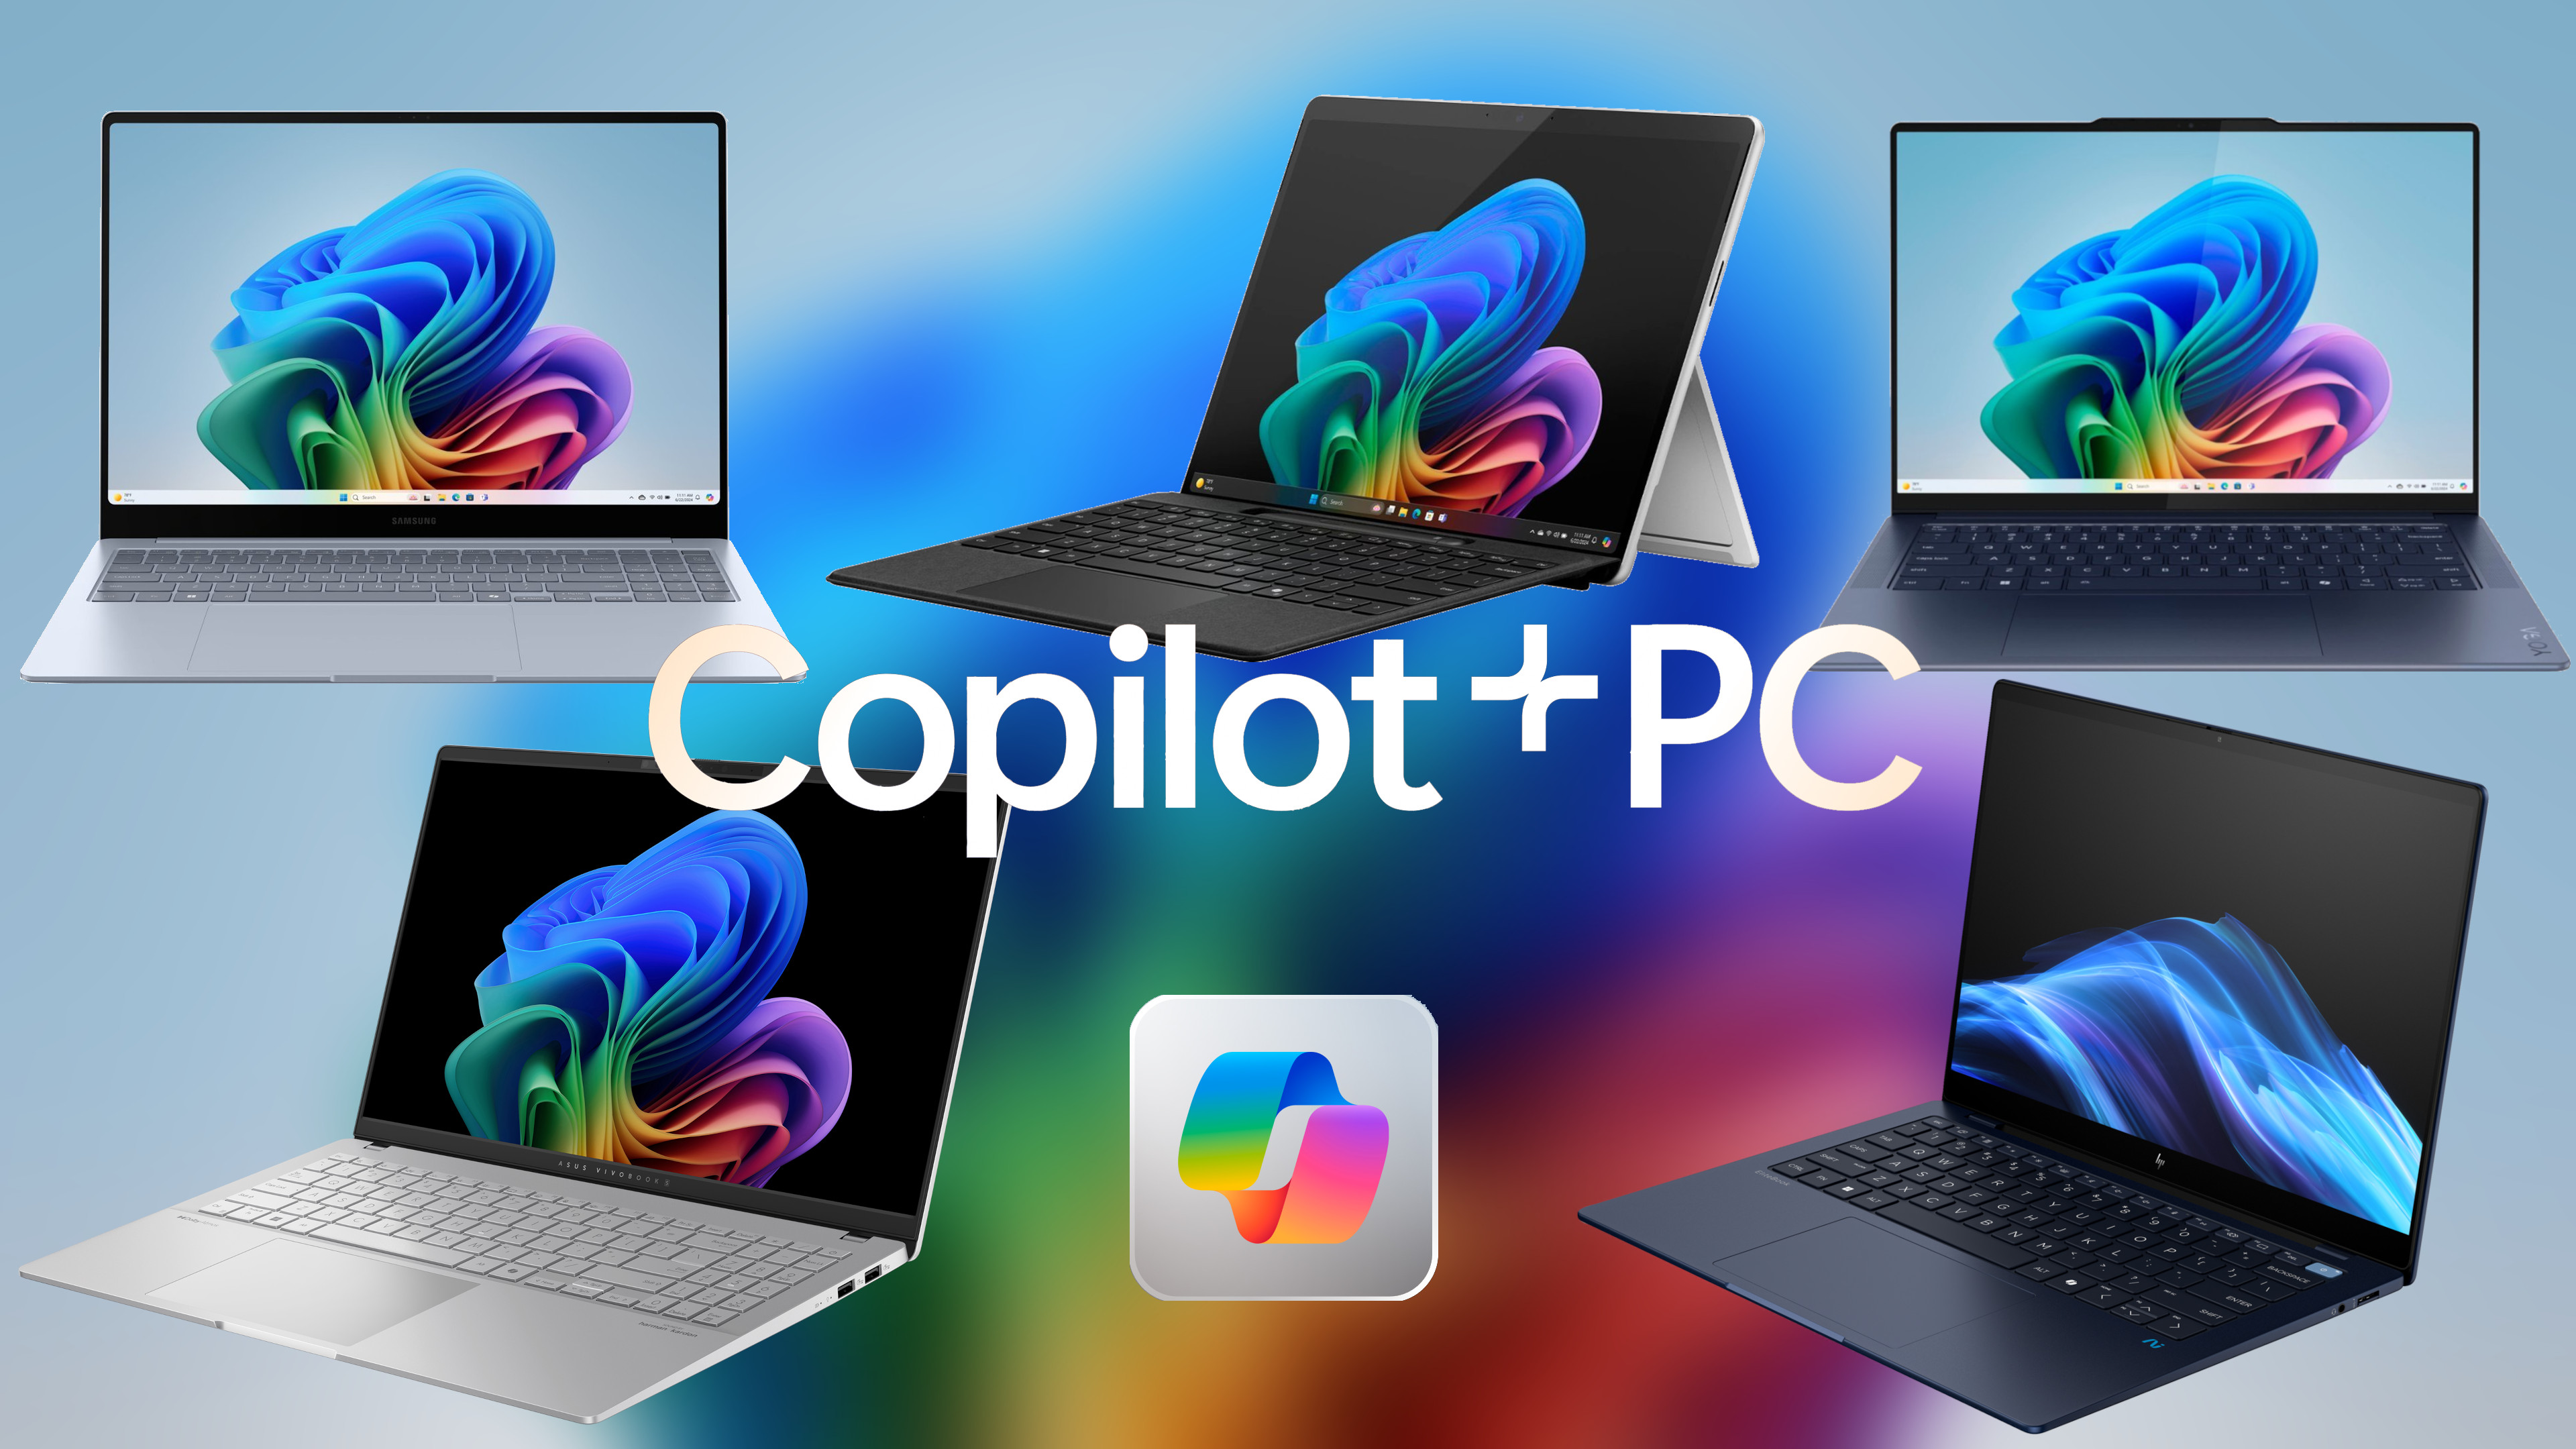 Best Copilot+ PCs